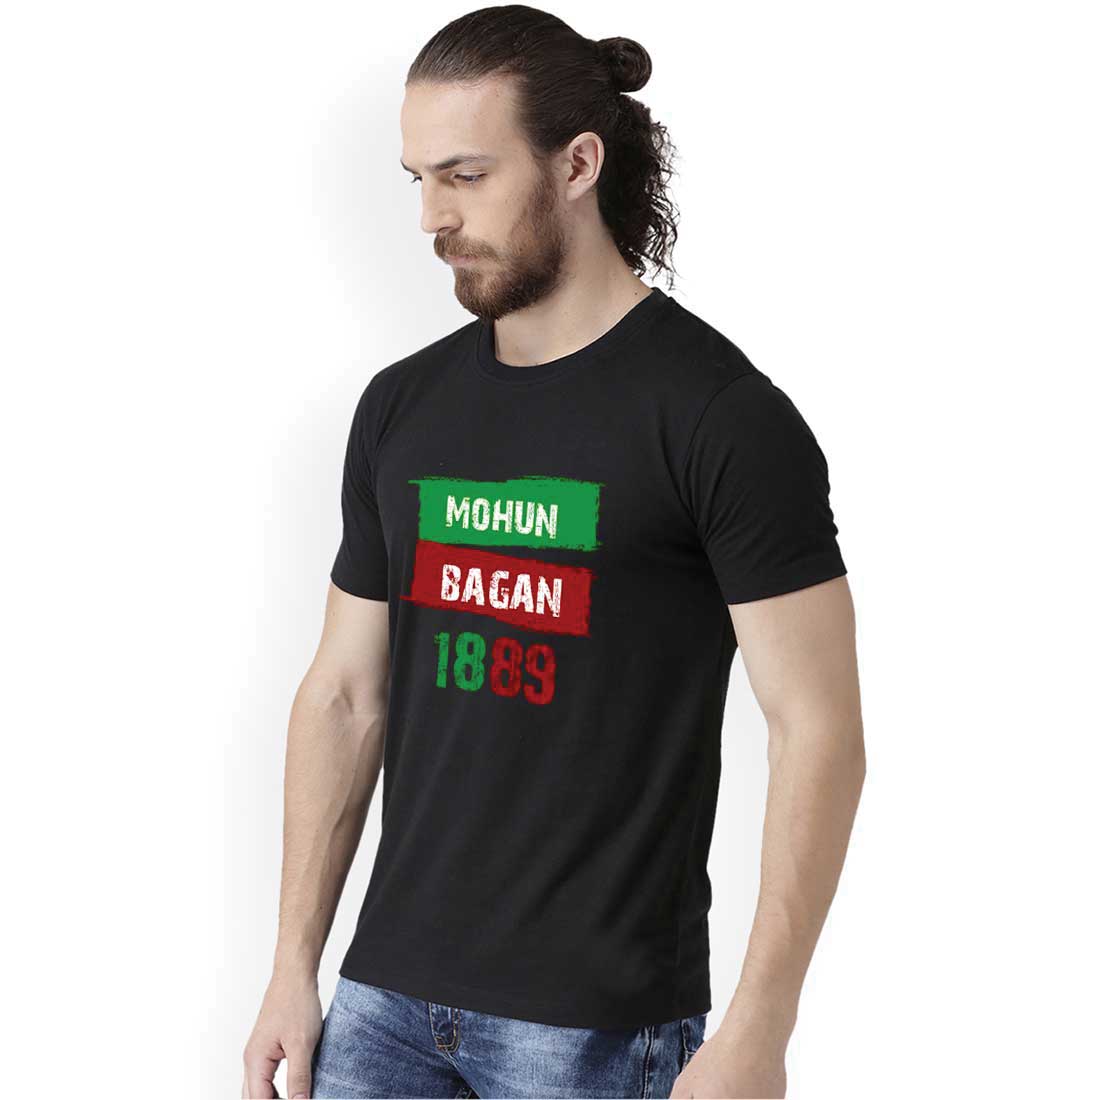 Mohun Bagan 1889 Black Men T-Shirt